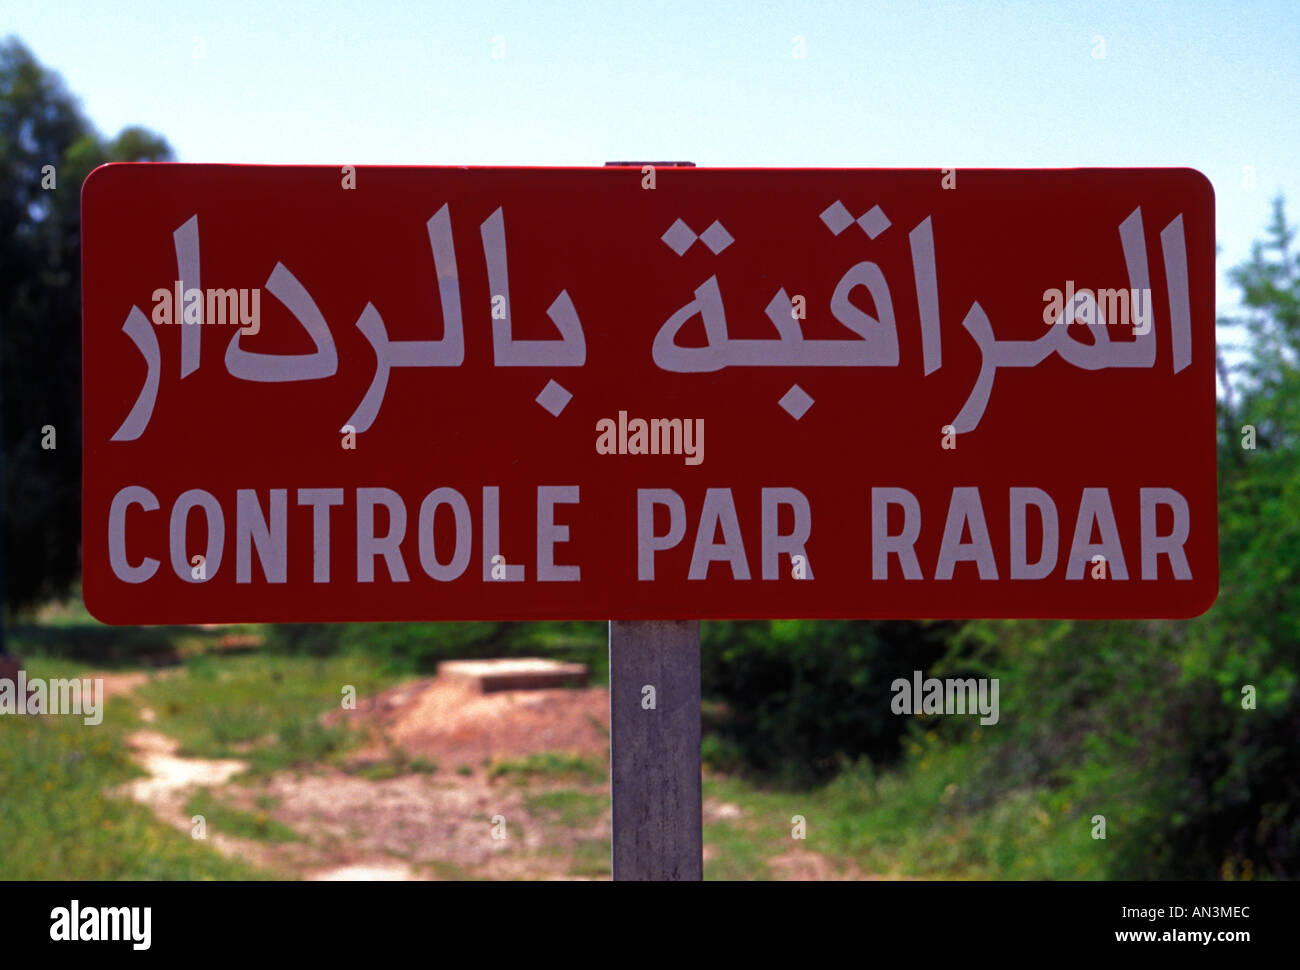 bilingual road sign, bi-lingual road sign, bilingual sign, controle par radar, radar control, Marrakech, Morocco Stock Photo